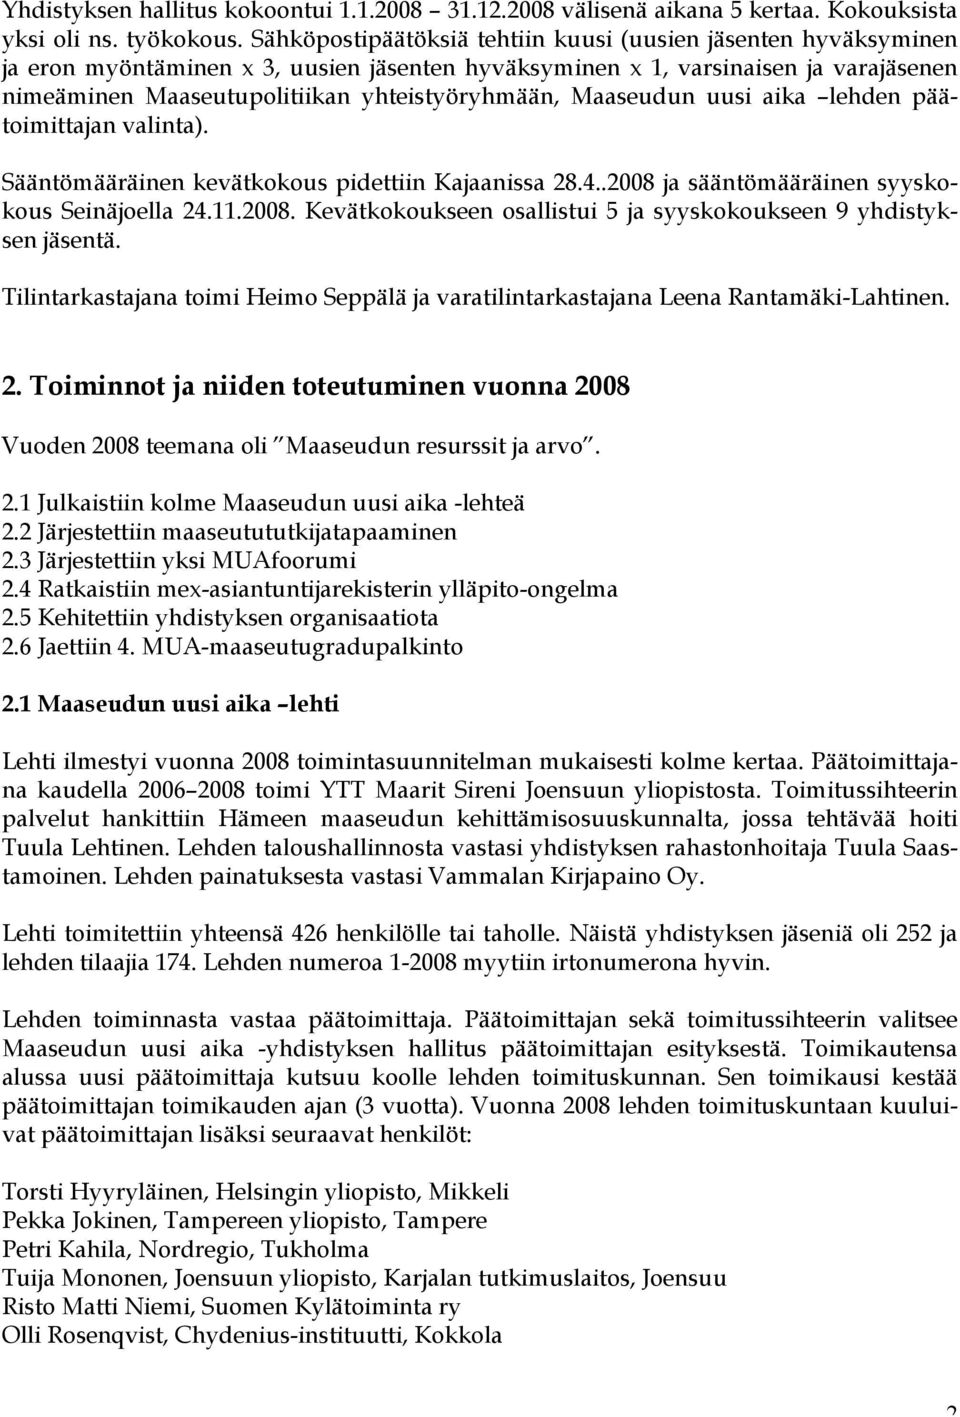 Maaseudun uusi aika lehden päätoimittajan valinta). Sääntömääräinen kevätkokous pidettiin Kajaanissa 28.4..2008 ja sääntömääräinen syyskokous Seinäjoella 24.11.2008. Kevätkokoukseen osallistui 5 ja syyskokoukseen 9 yhdistyksen jäsentä.